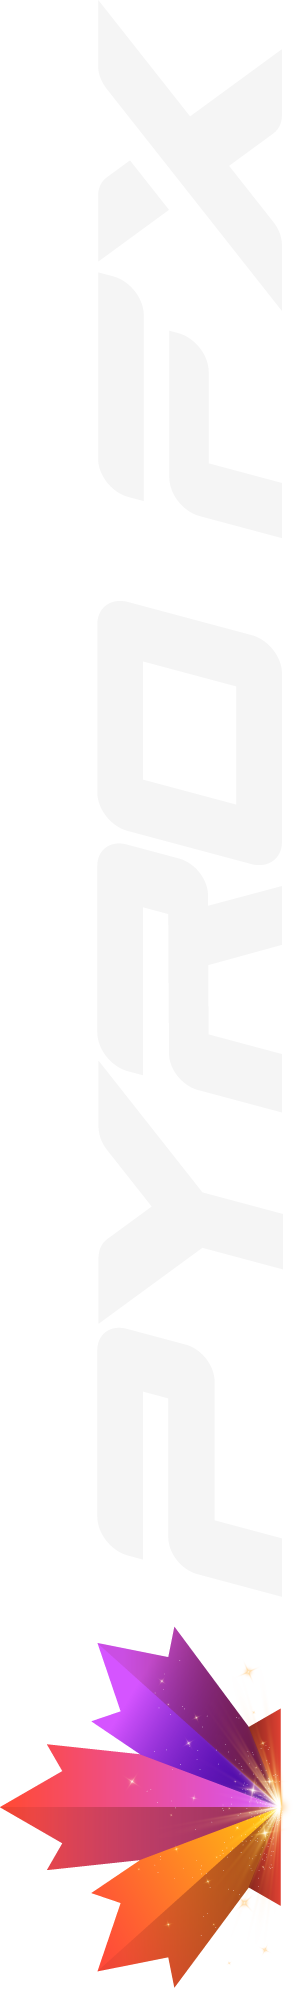 pyro logo vertical